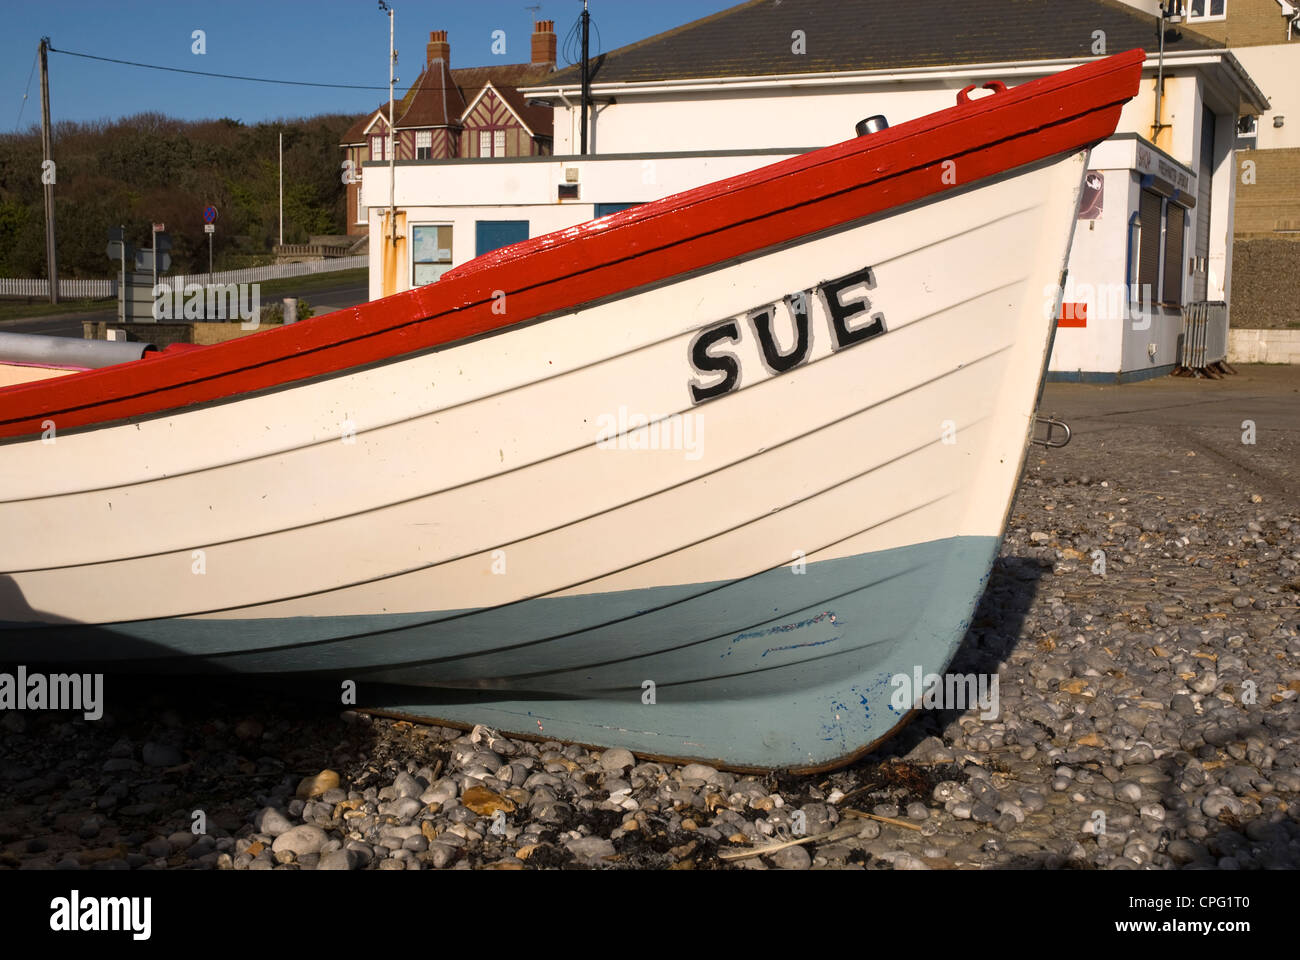 Ein kleines Ruderboot named SUE auf einem Kiesstrand Stockfoto